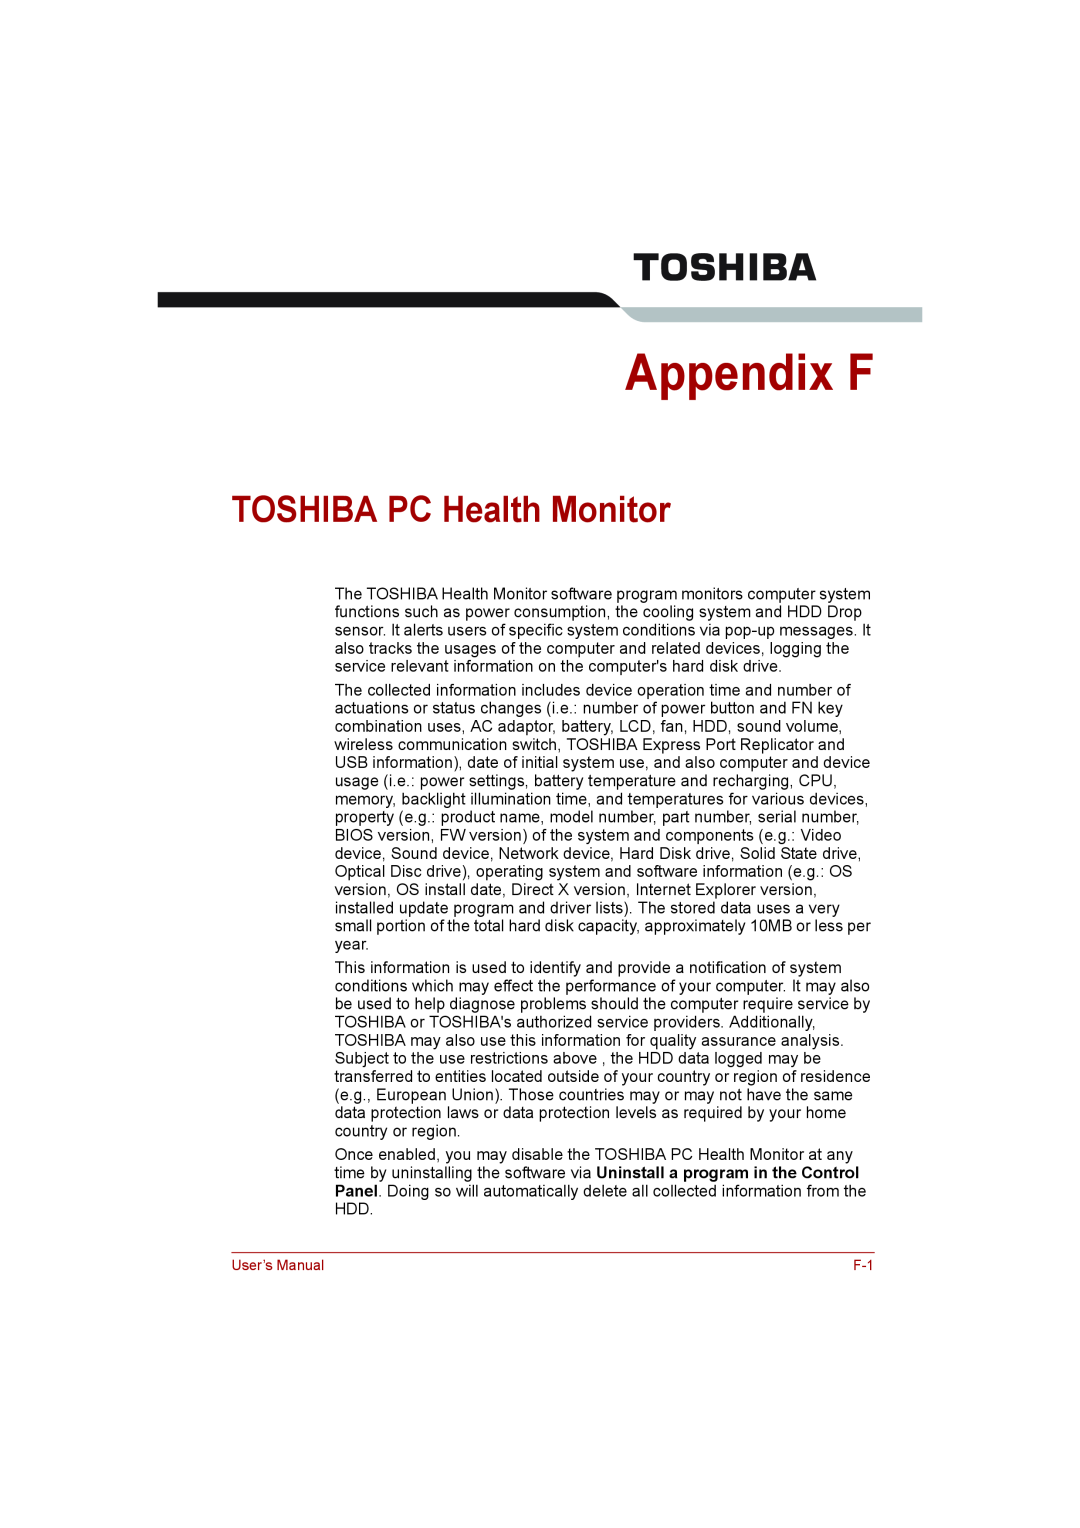 Toshiba toshiba satellite l550/ satellite pro l550/ satellite l550d/ satellite pro l550d series user manual Appendix F 